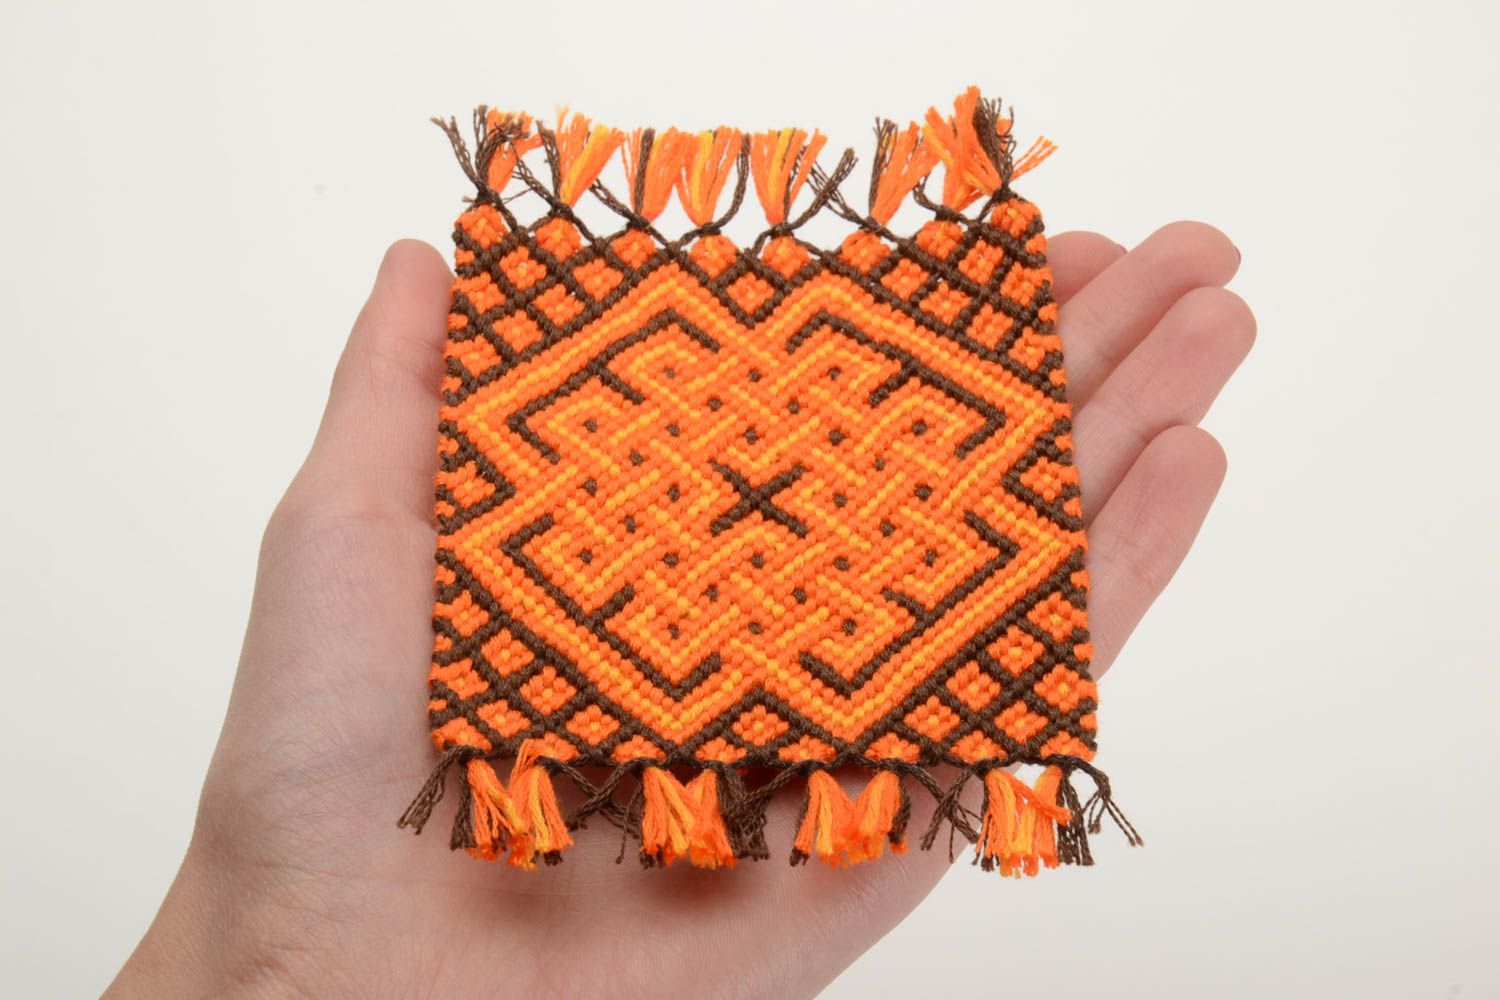 Textil Untersetzer für Tassen aus Mulinee Fäden geflochten handmade foto 5